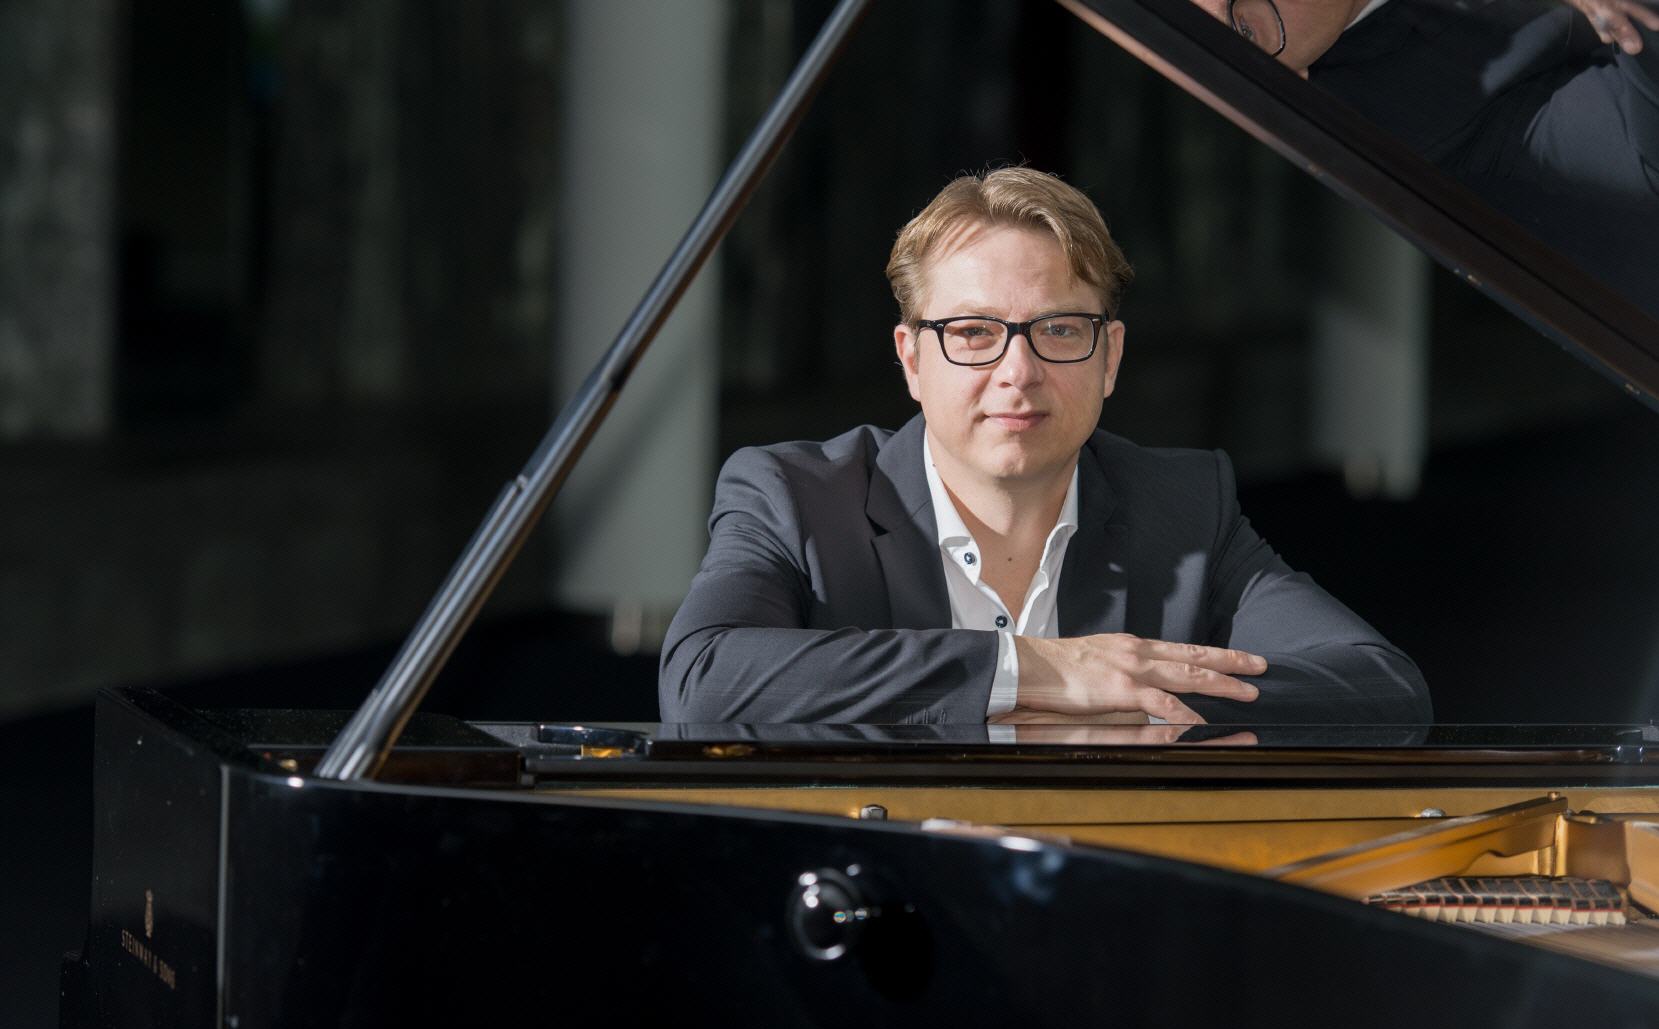 Klavierunterricht in Luetgendortmund: Klavierlehrer Alexander Hoell 2017